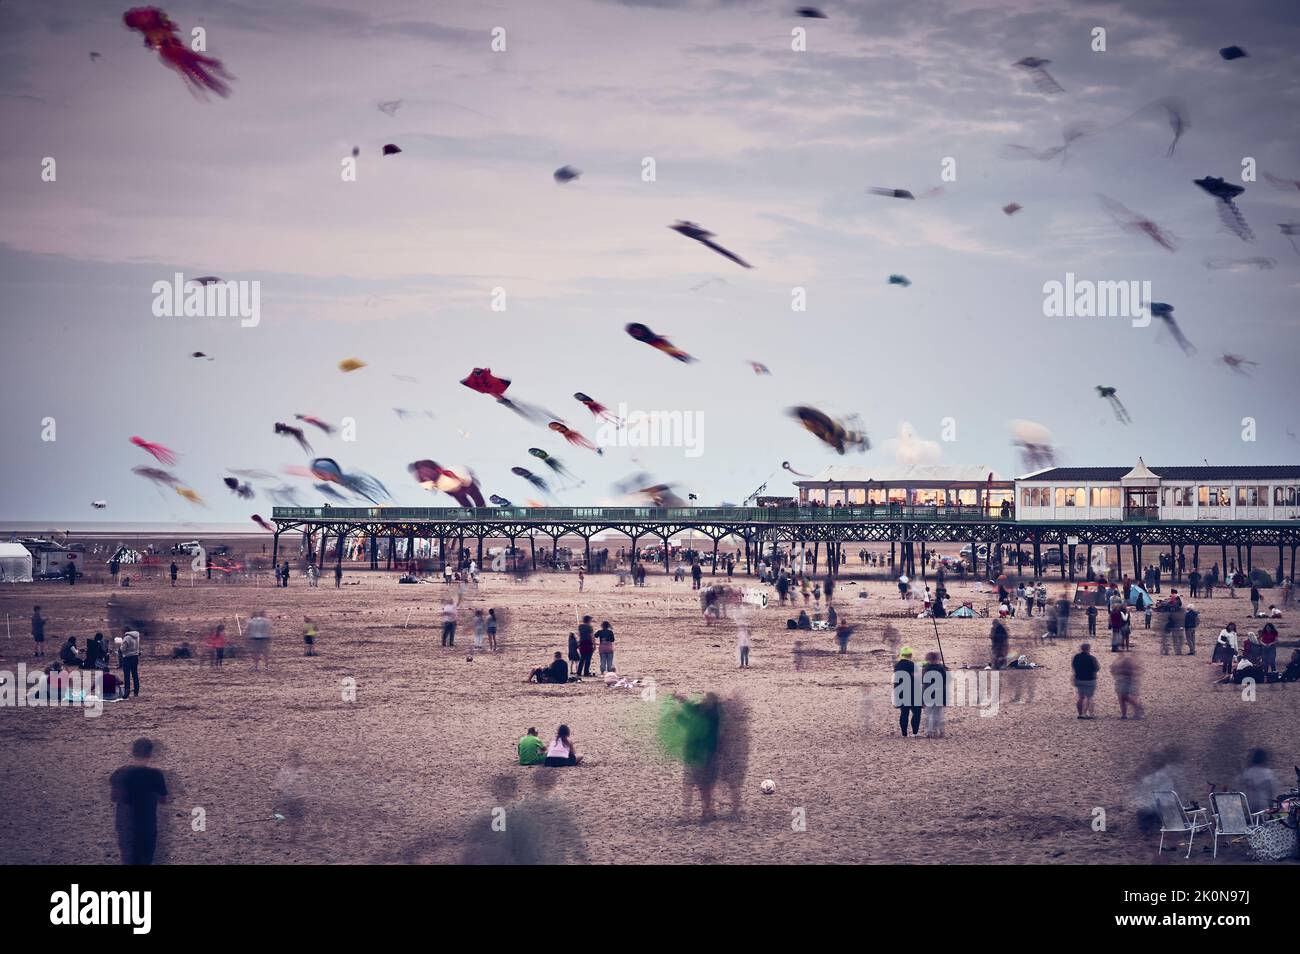 St Annes International kite festival held on the beach in September.Kites flying at dusk Stock Photo